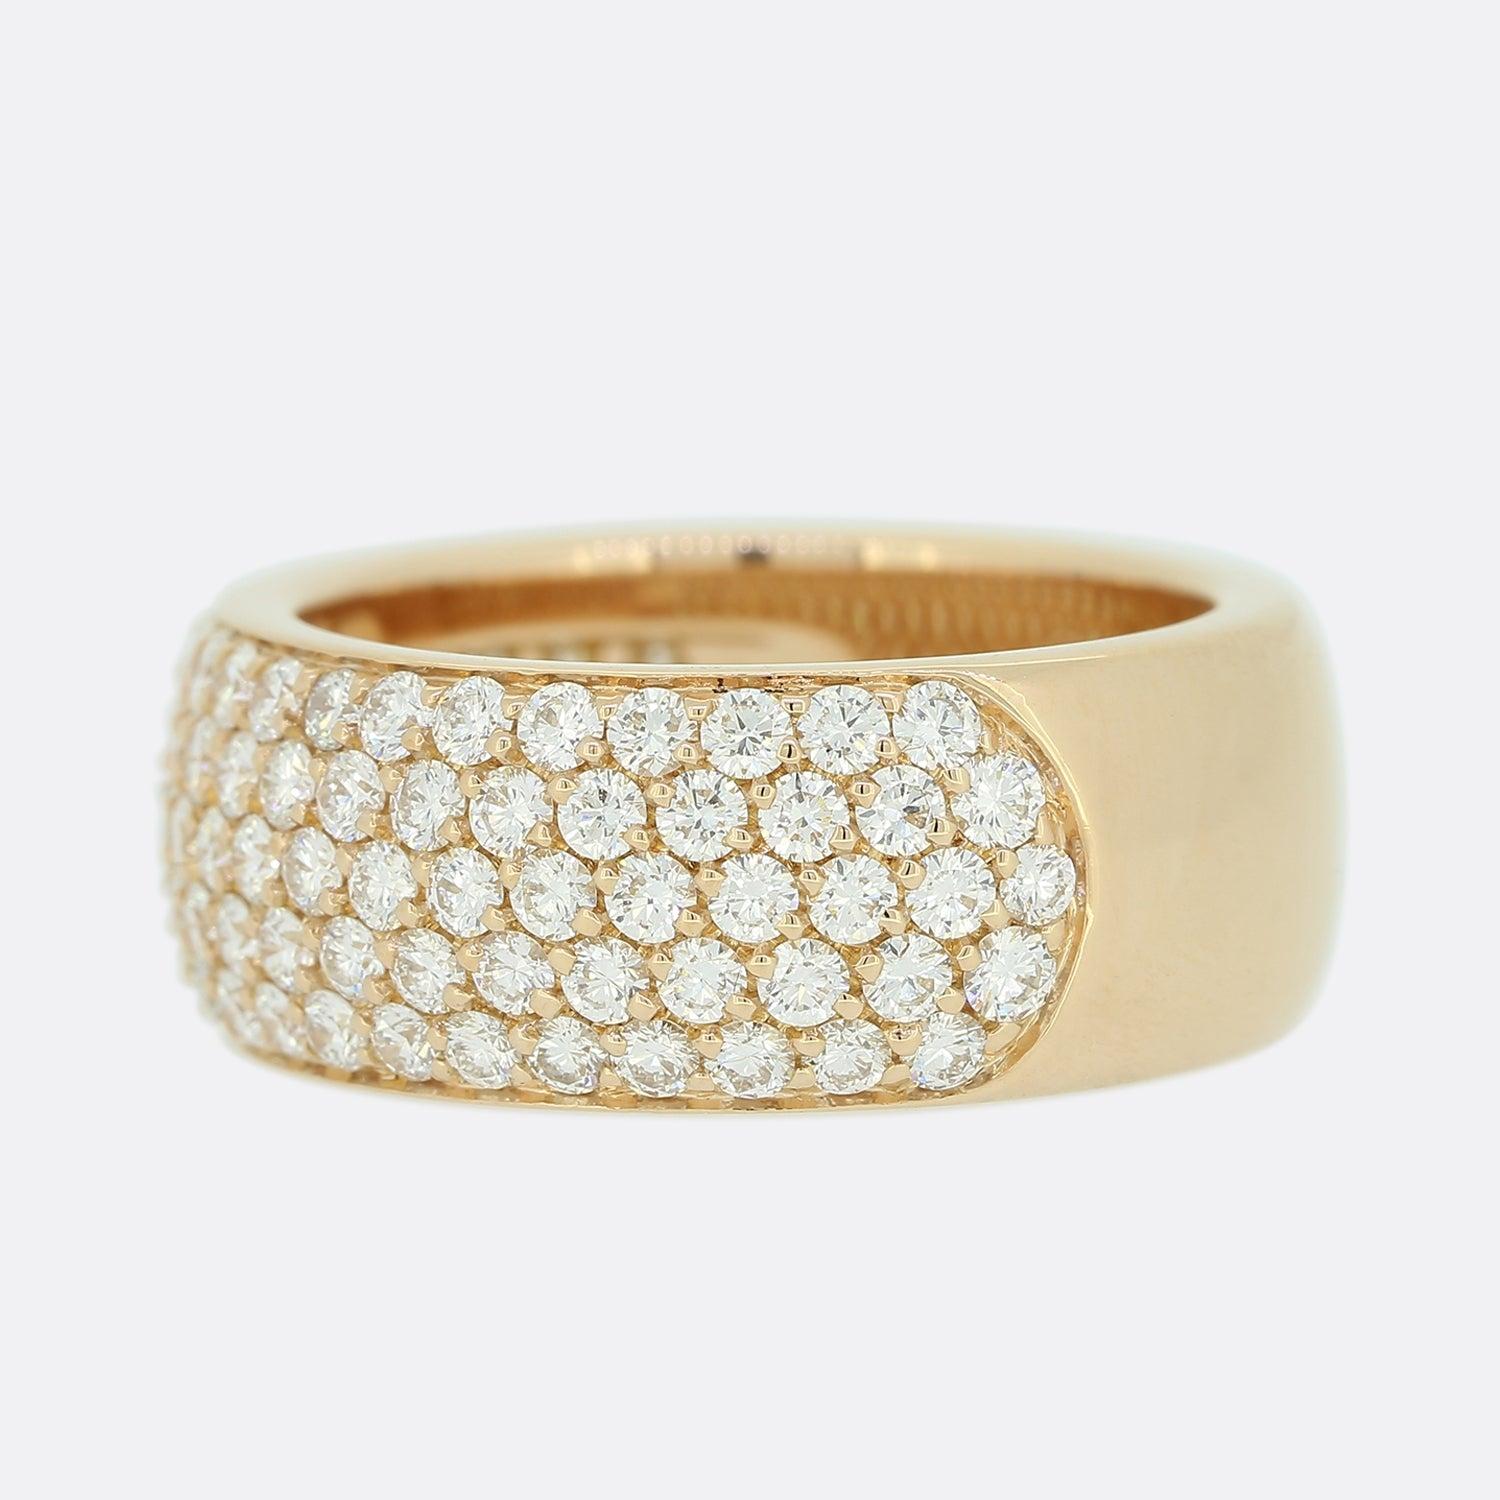 Dies ist eine wunderbare 18 Karat Roségold, Pave Set Diamantband Ring aus dem Luxus-Schmuck-Designer Cartier. Der Ring ist mit 2,0 Karat funkelnden, runden Diamanten im Brillantschliff besetzt, die sich über die Hälfte der Ringschiene erstrecken.